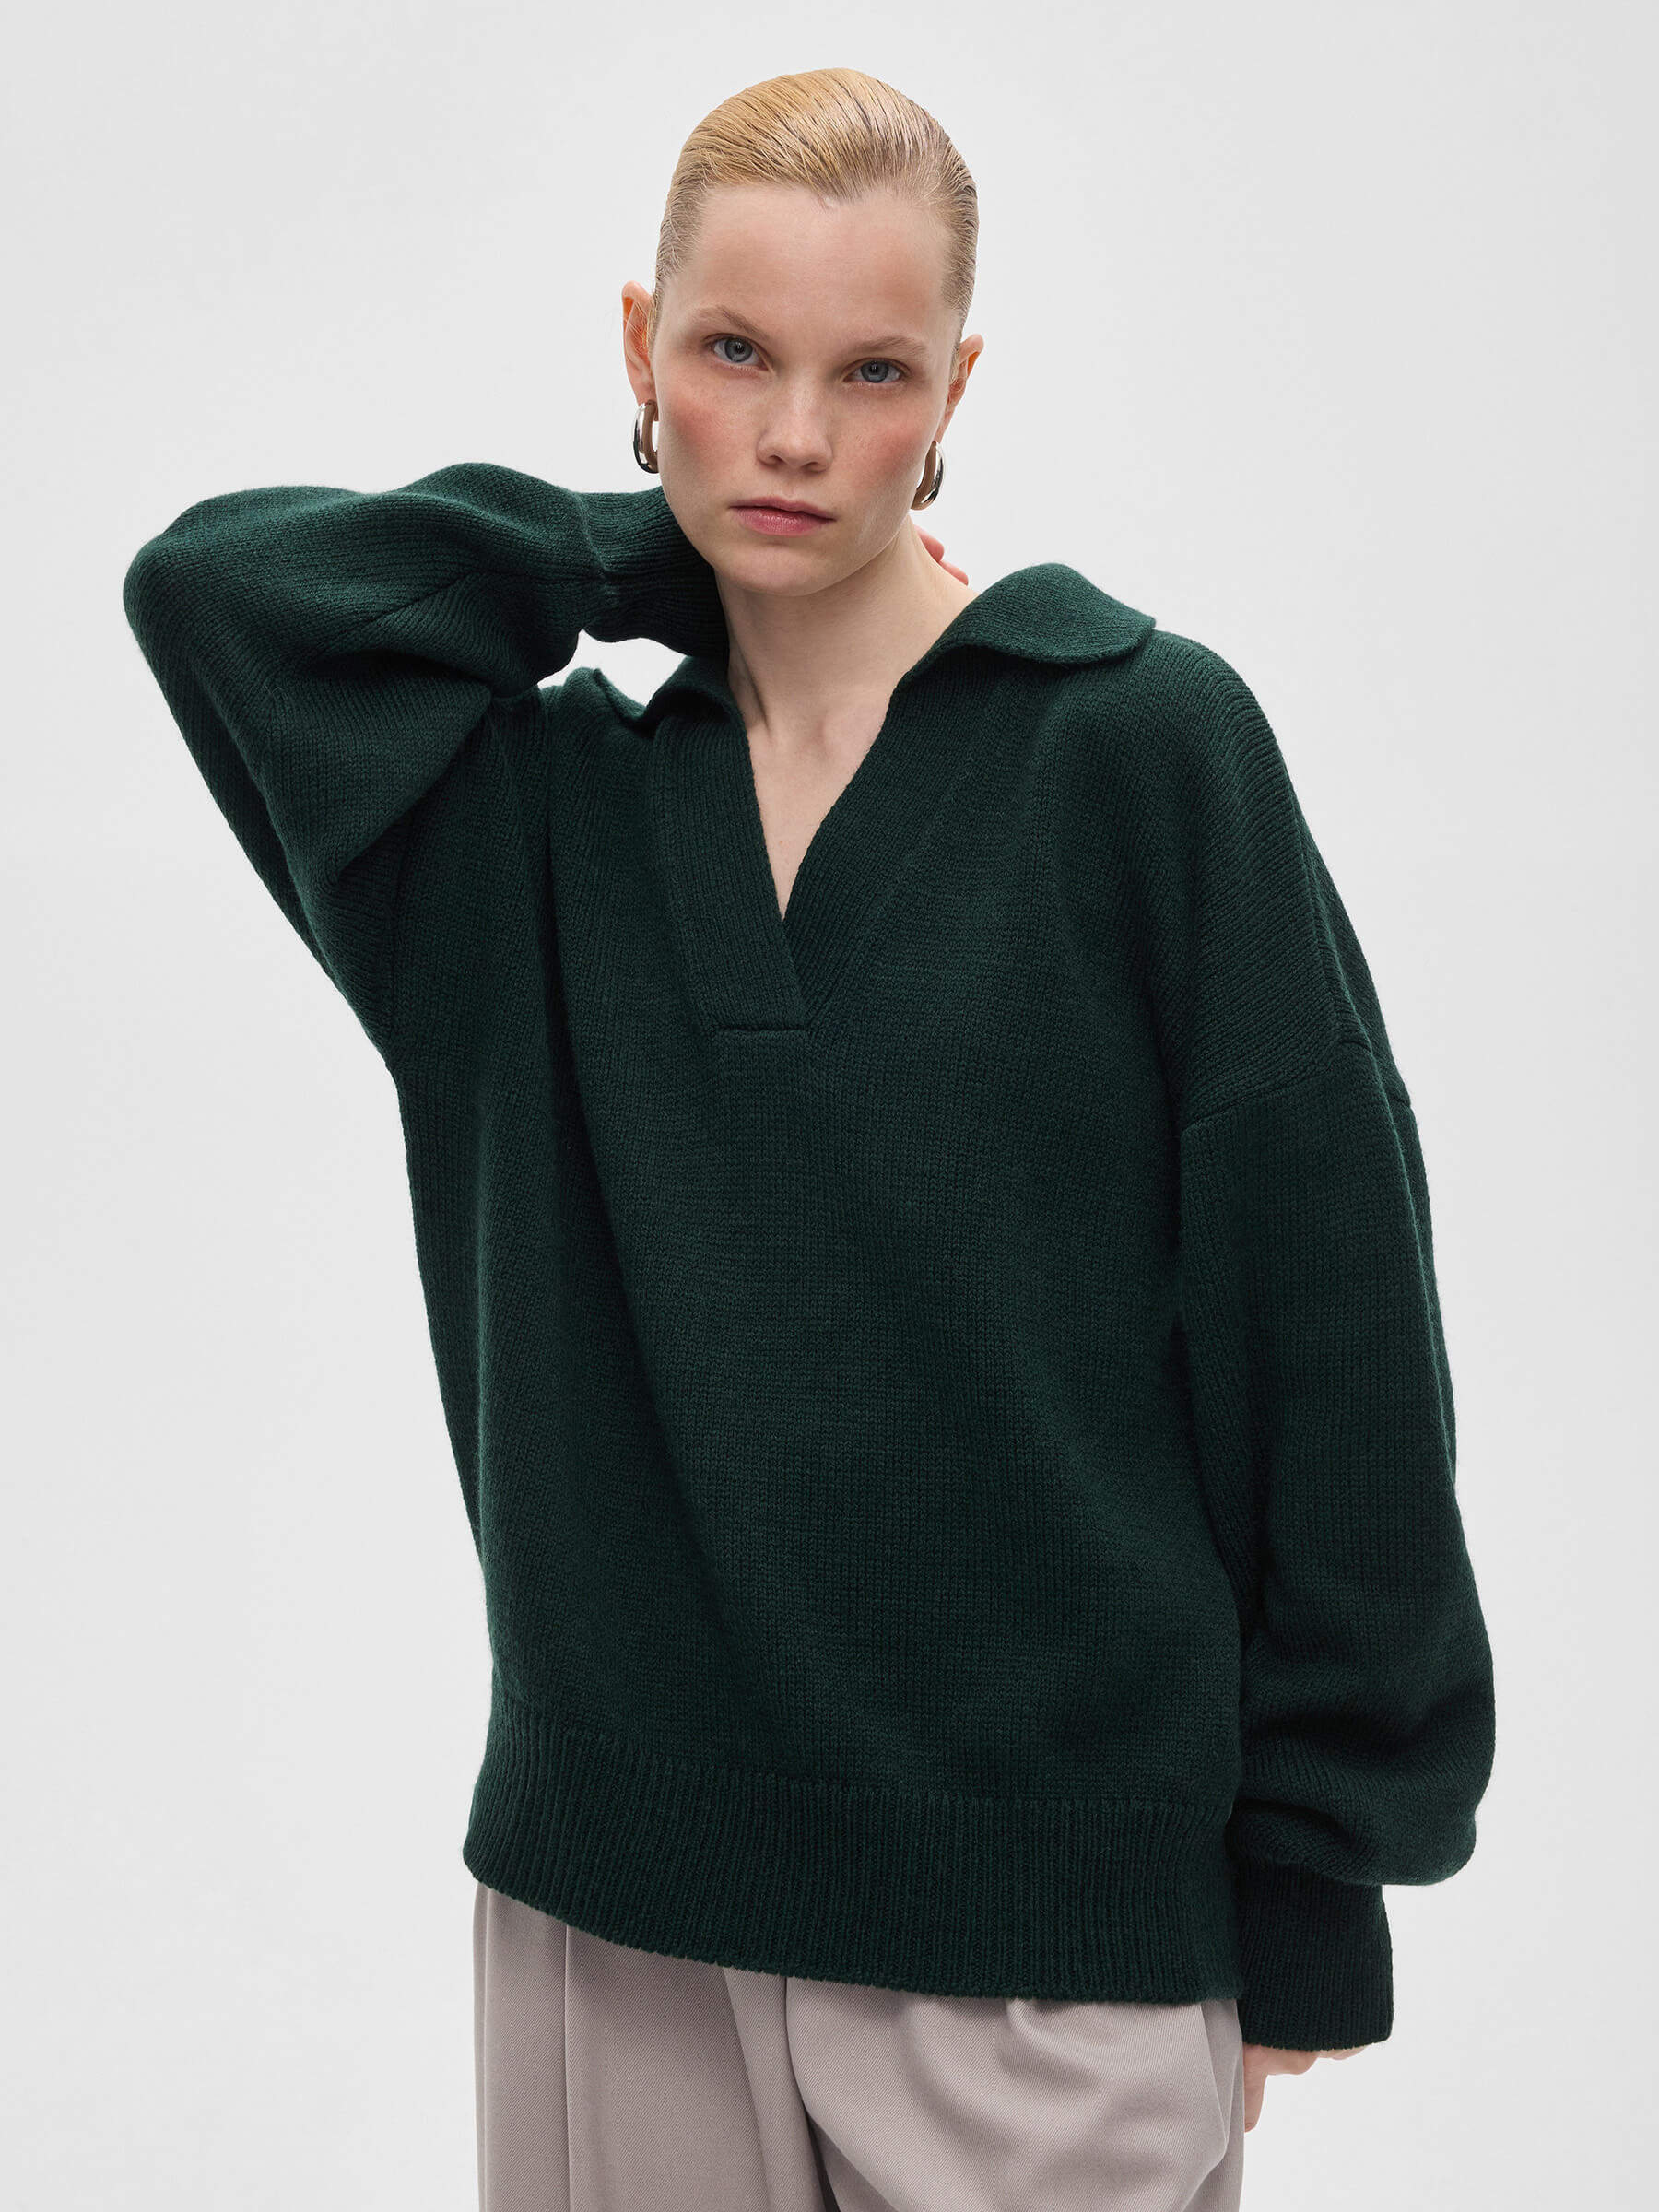 джемпер uniqlo 100% cashmere v neck темно зеленый Джемпер-поло женский из шерсти, цвет – темно-зеленый